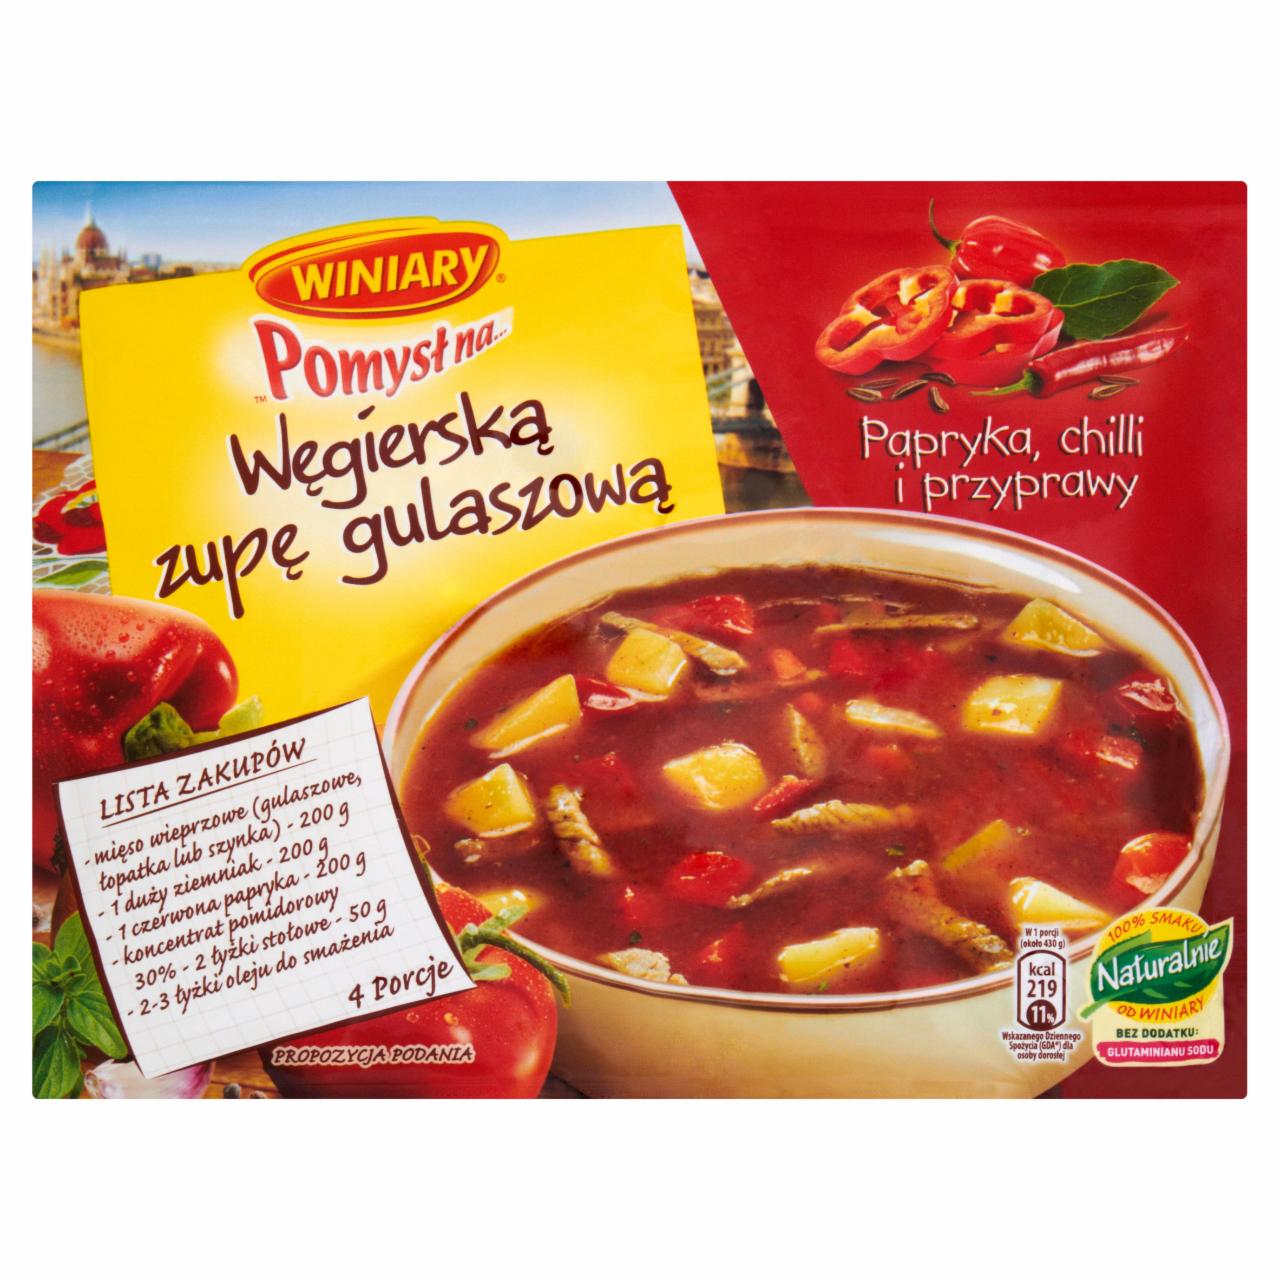 Zdjęcia - Winiary Pomysł na... Węgierską zupę gulaszową Papryka chili i przyprawy 56 g